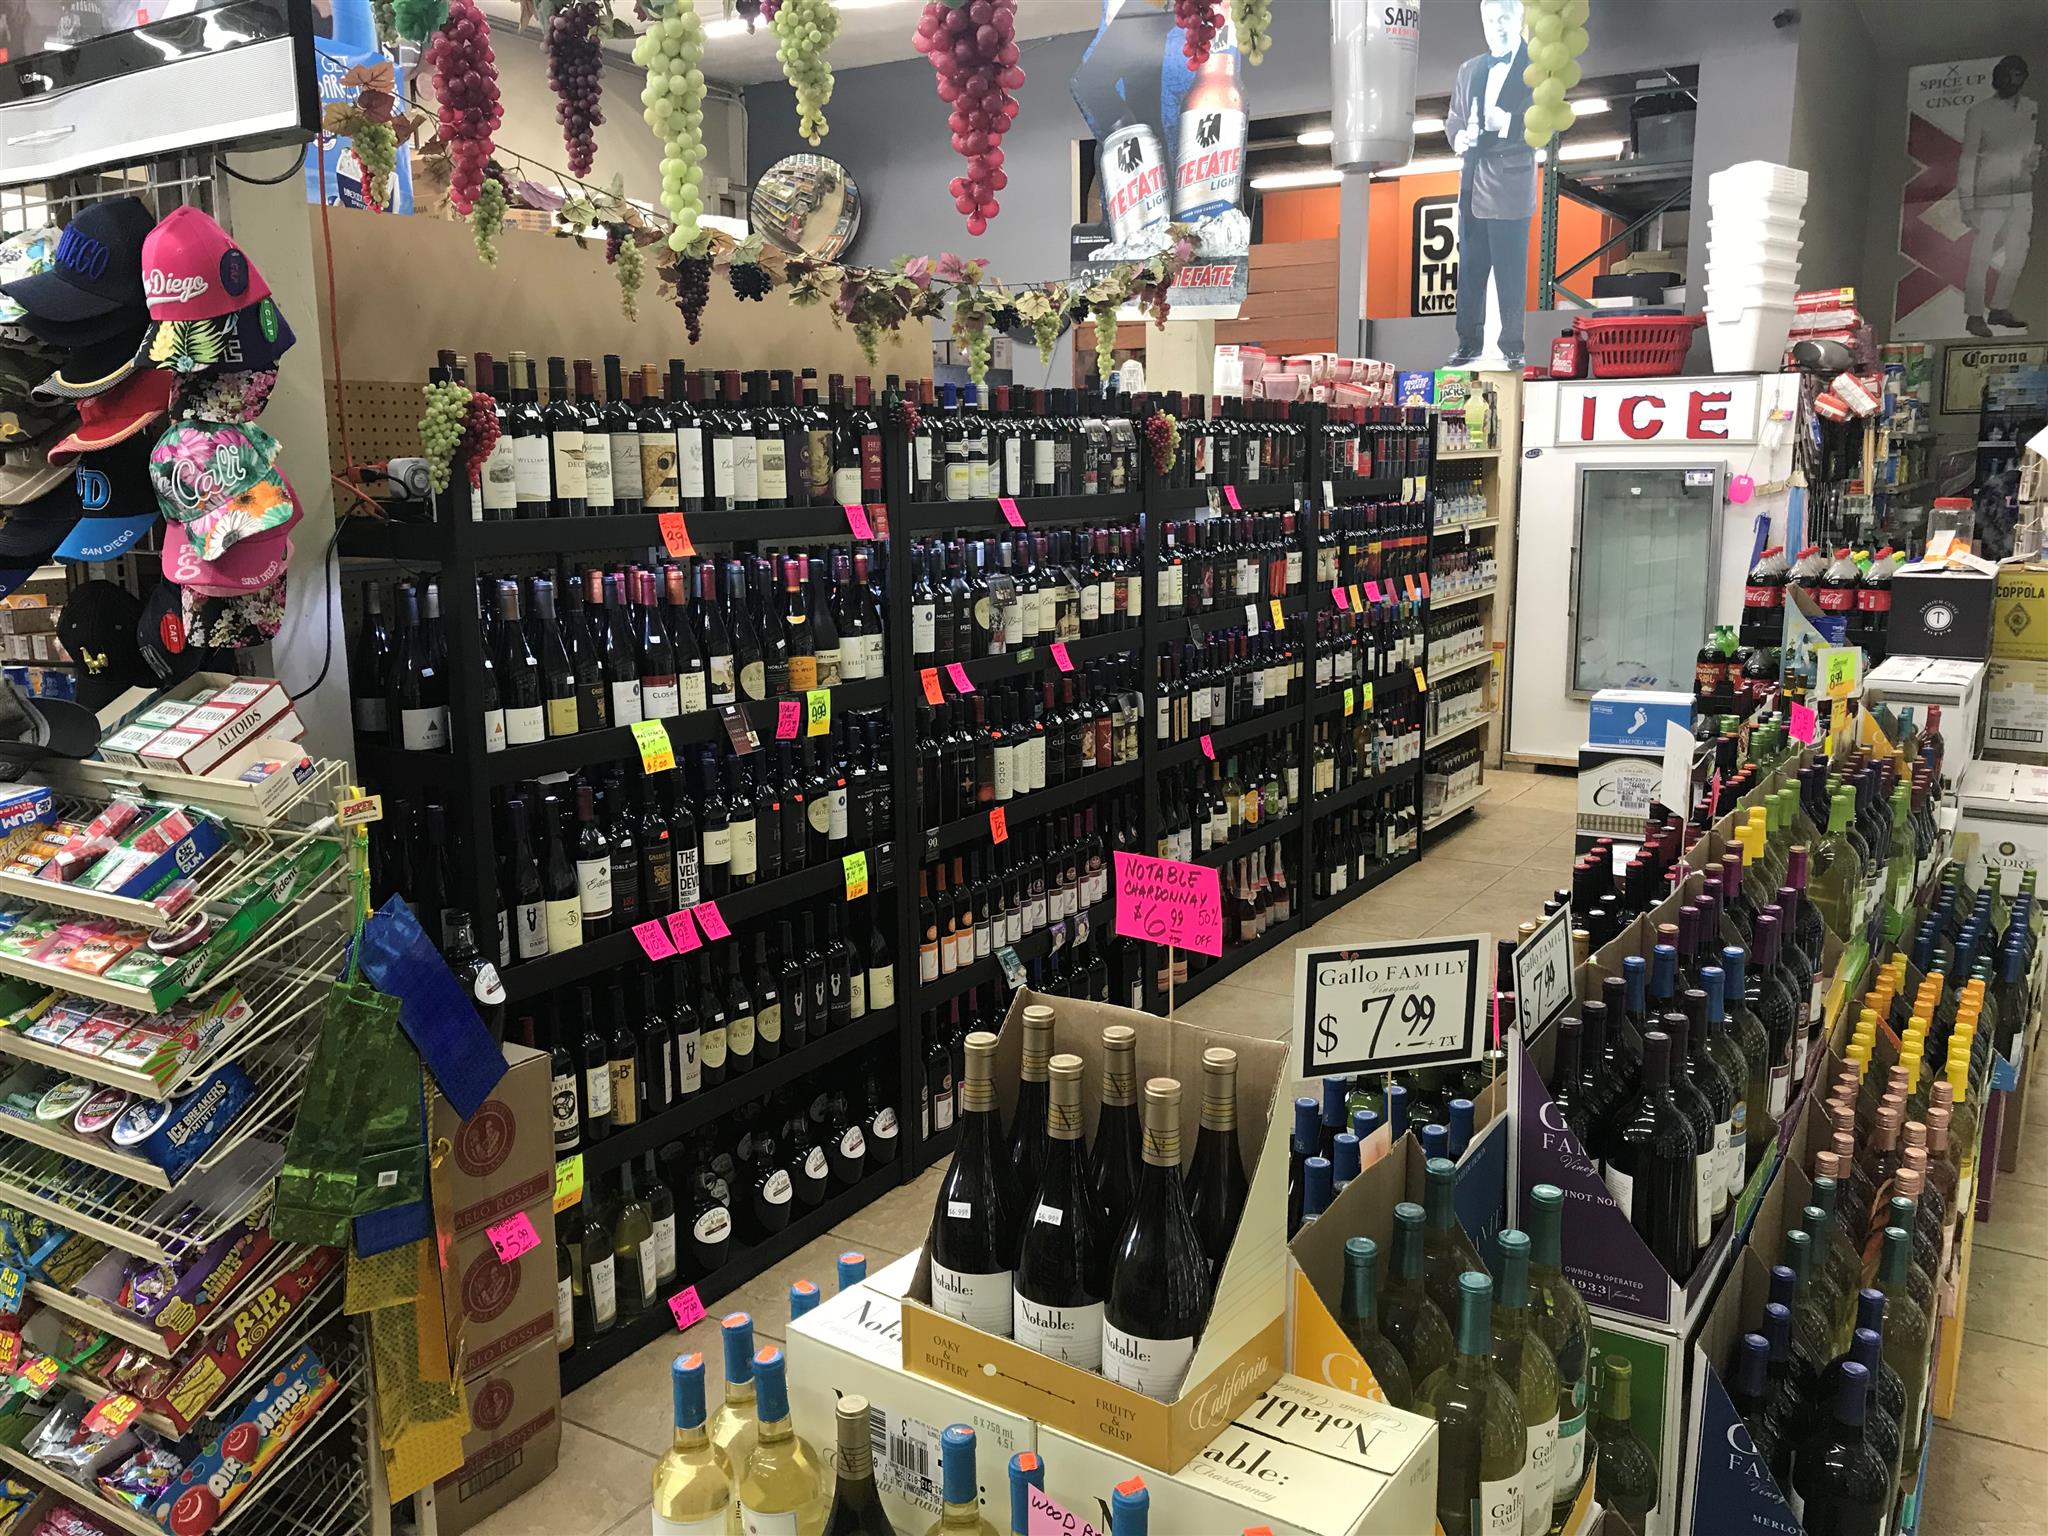 San Diego Market - Wine